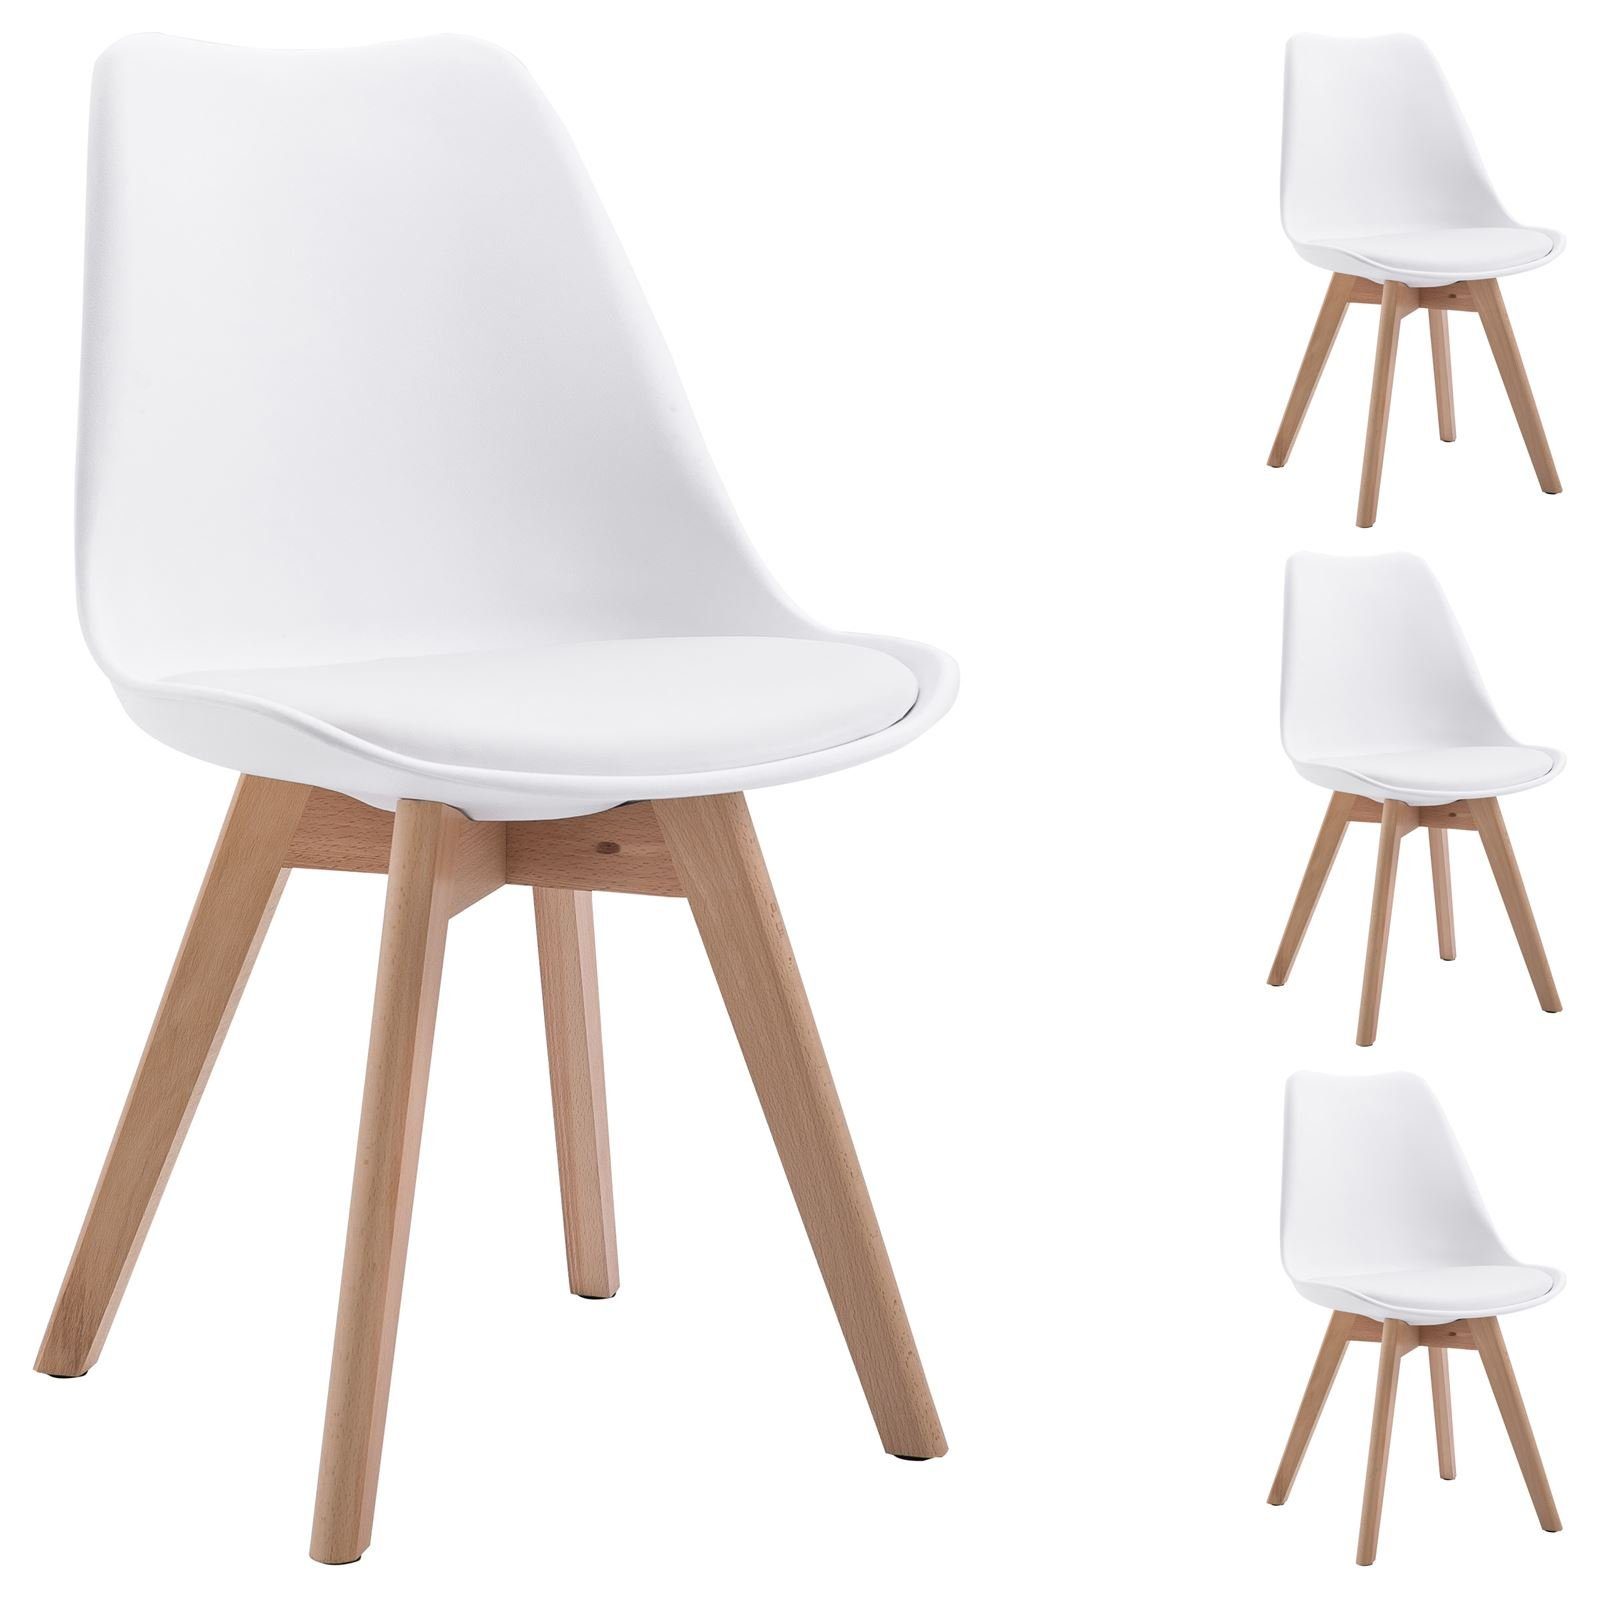 IDIMEX Esszimmerstuhl ABBY (4 St), Stuhl Esszimmerstuhl Küchenstuhl Esstisch Retro Design Kunststoff 4er weiß